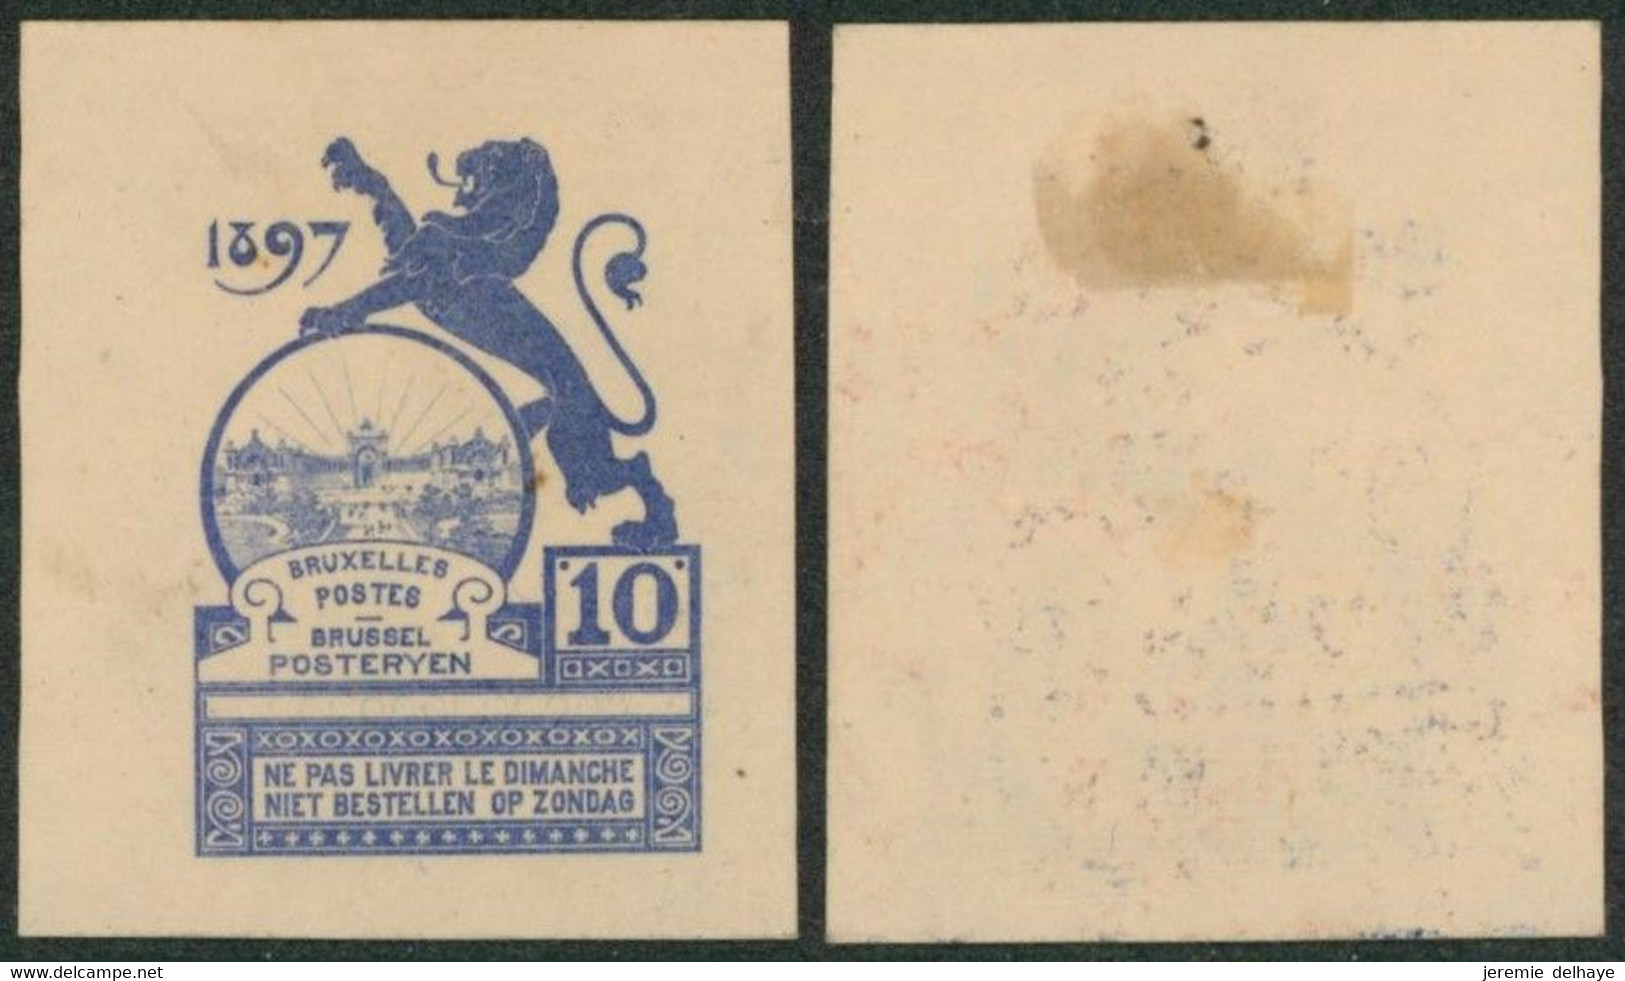 Essai - Proposition Du Peintre Louis Titz (Bruxelles Expositions 1897) Sur Papier Japon épais (1 Couleur) : STES 2223 - Prove E Ristampe